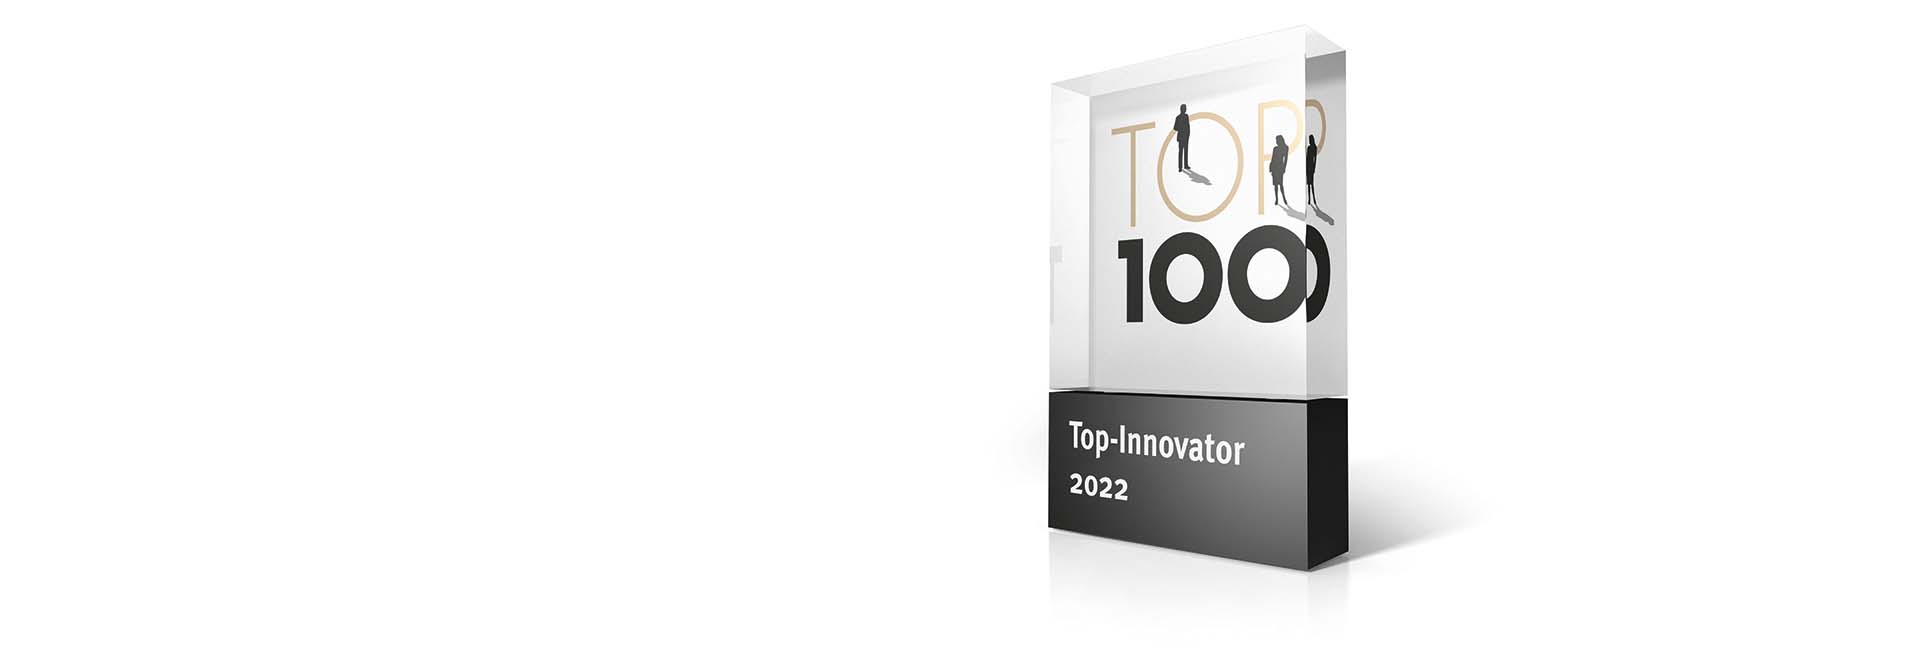 Společnost Erwin Junker Maschinenfabrik GmbH obdržela ocenění TOP 100